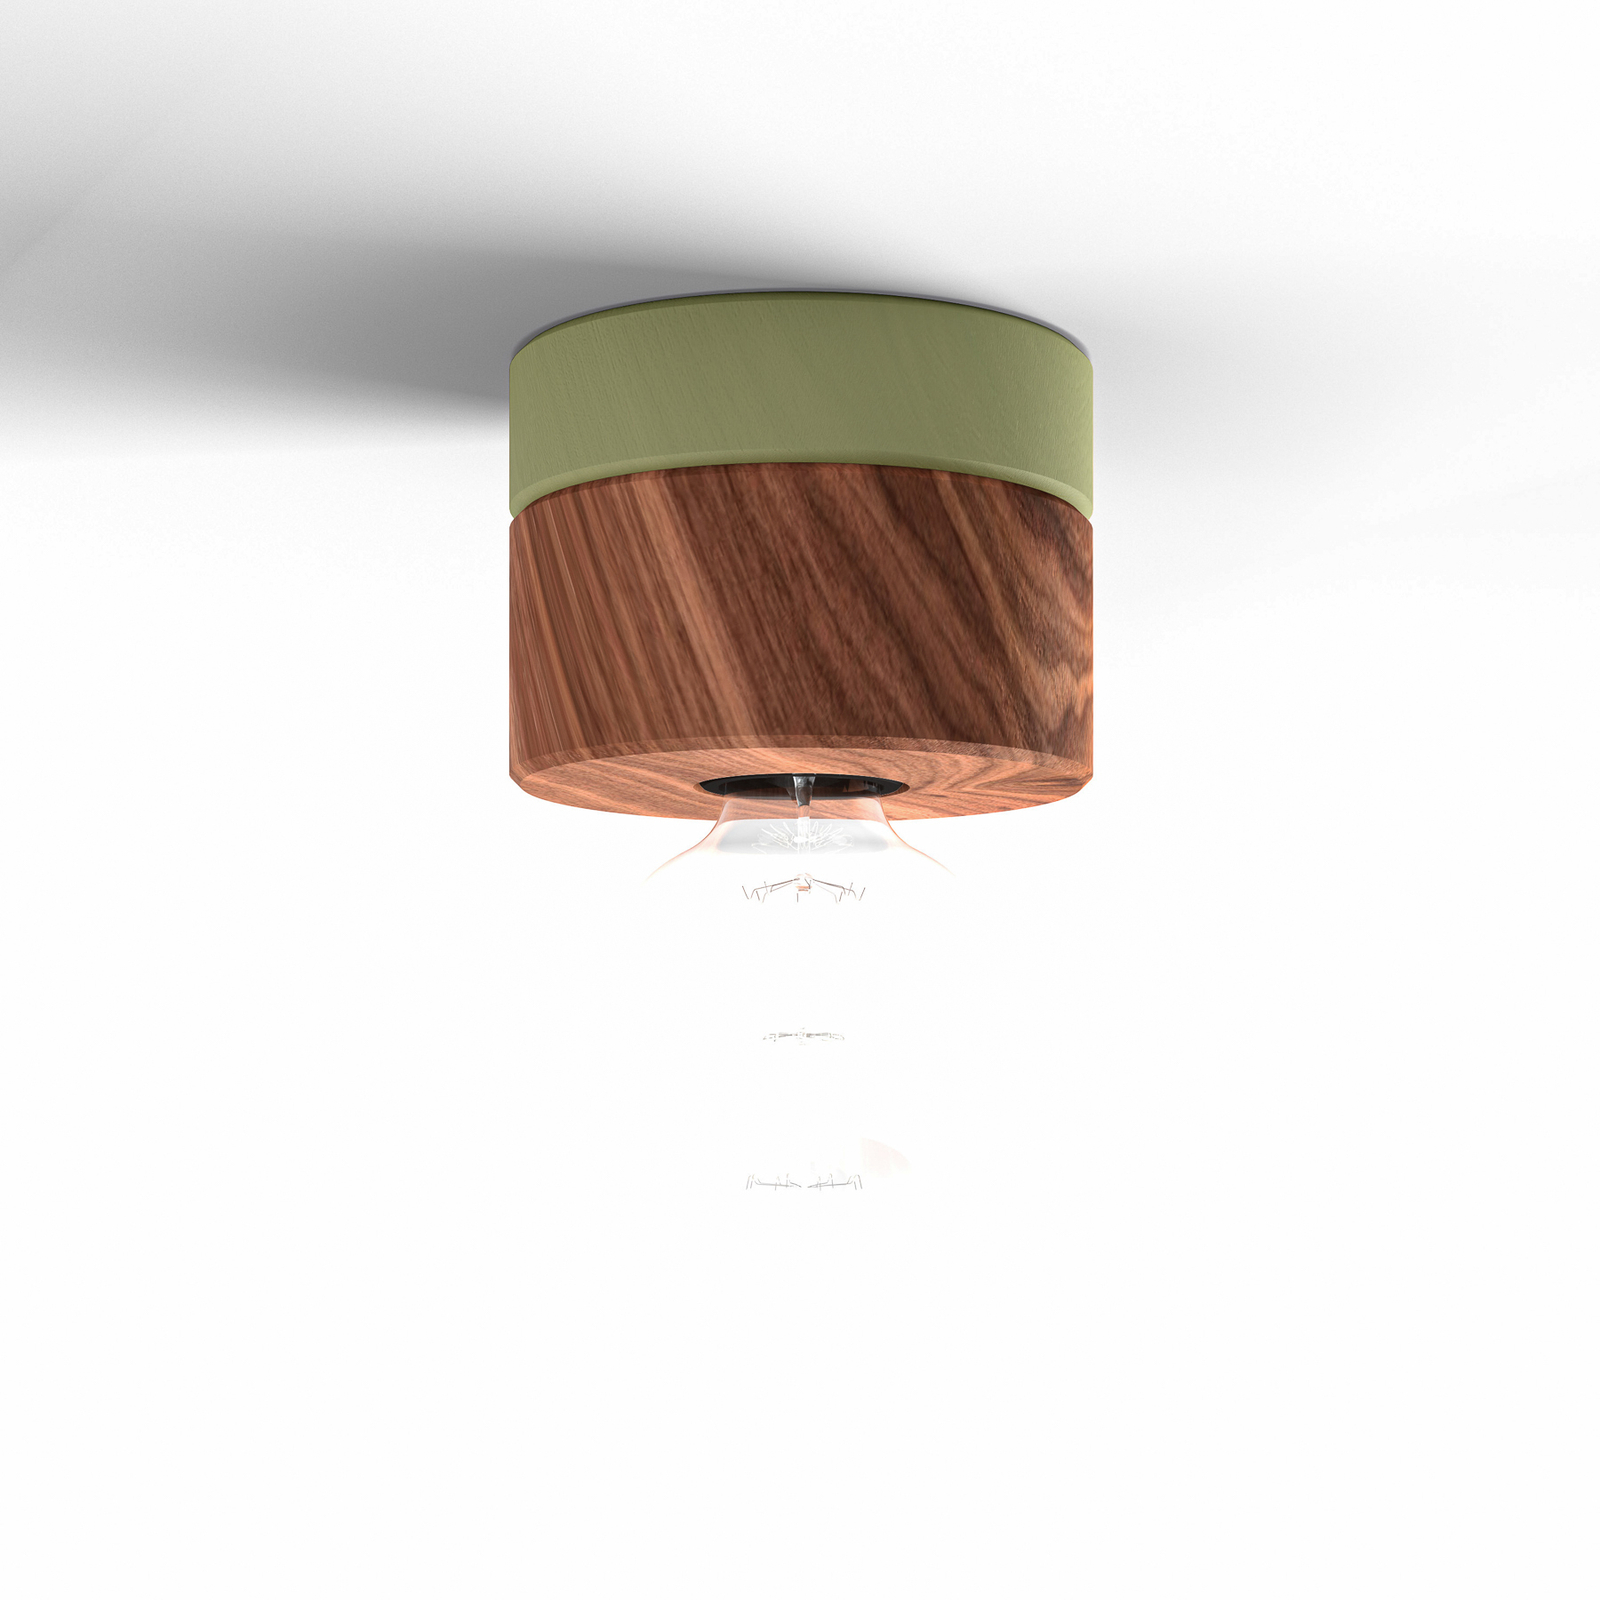 ALMUT 0239 plafondlamp, duurzaam, walnoot/groen